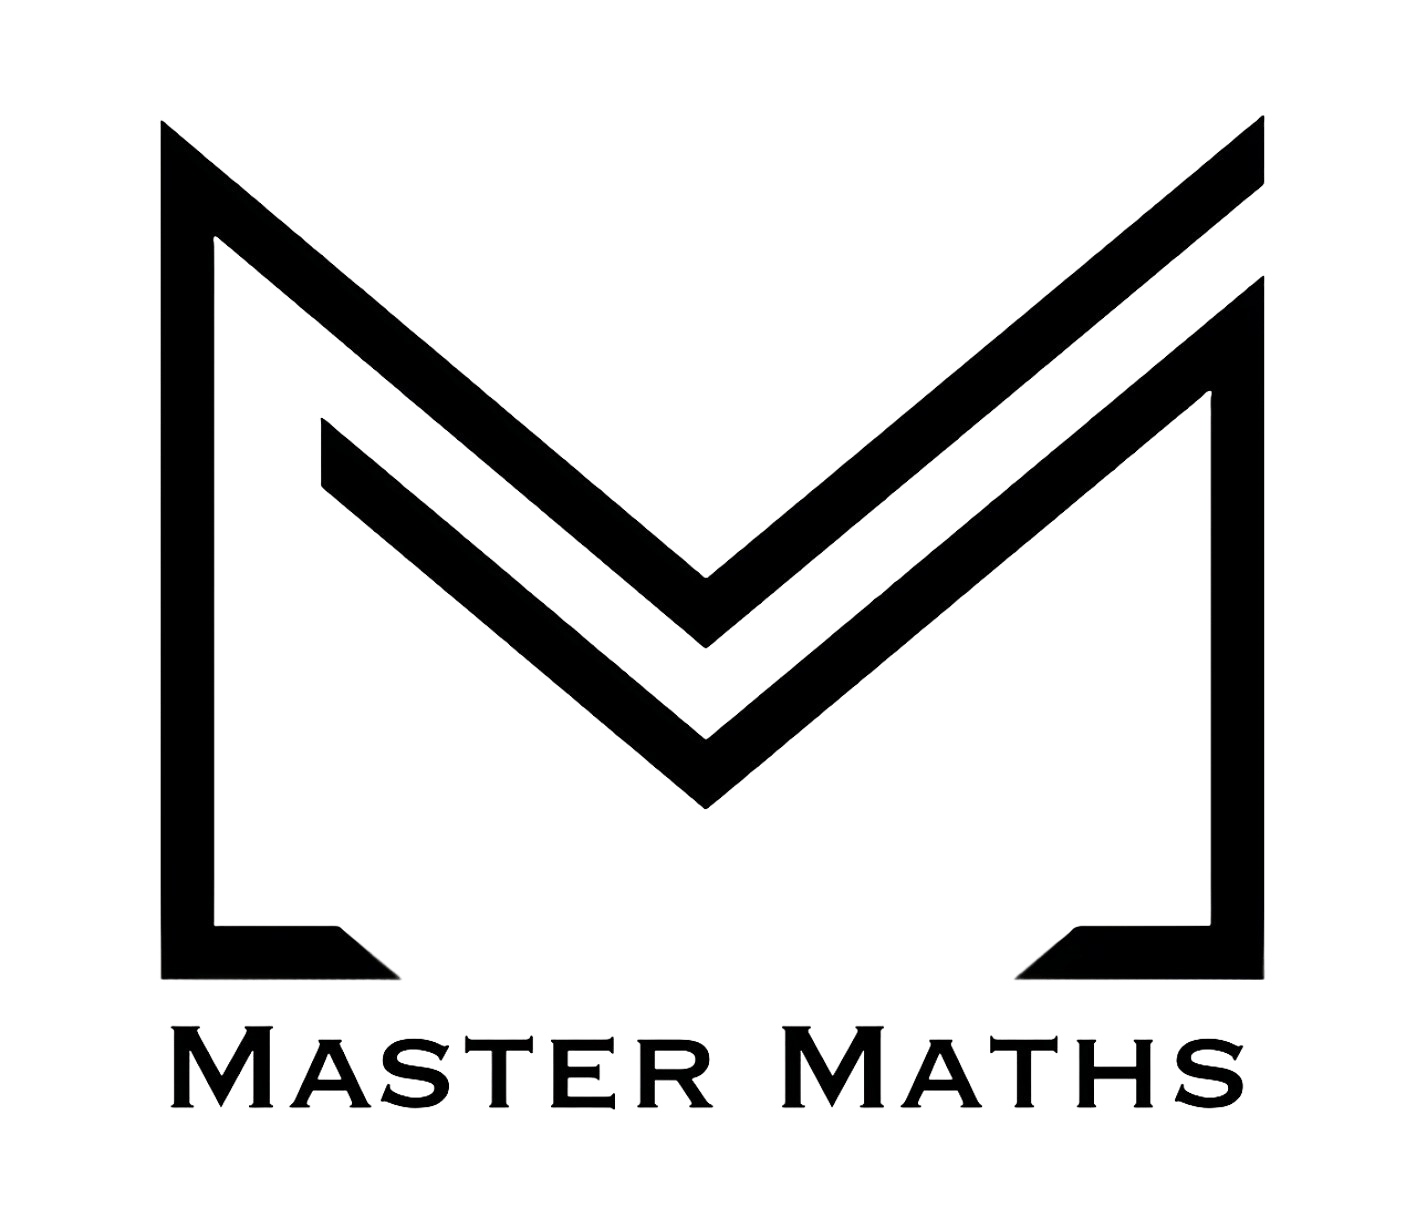 Master Maths